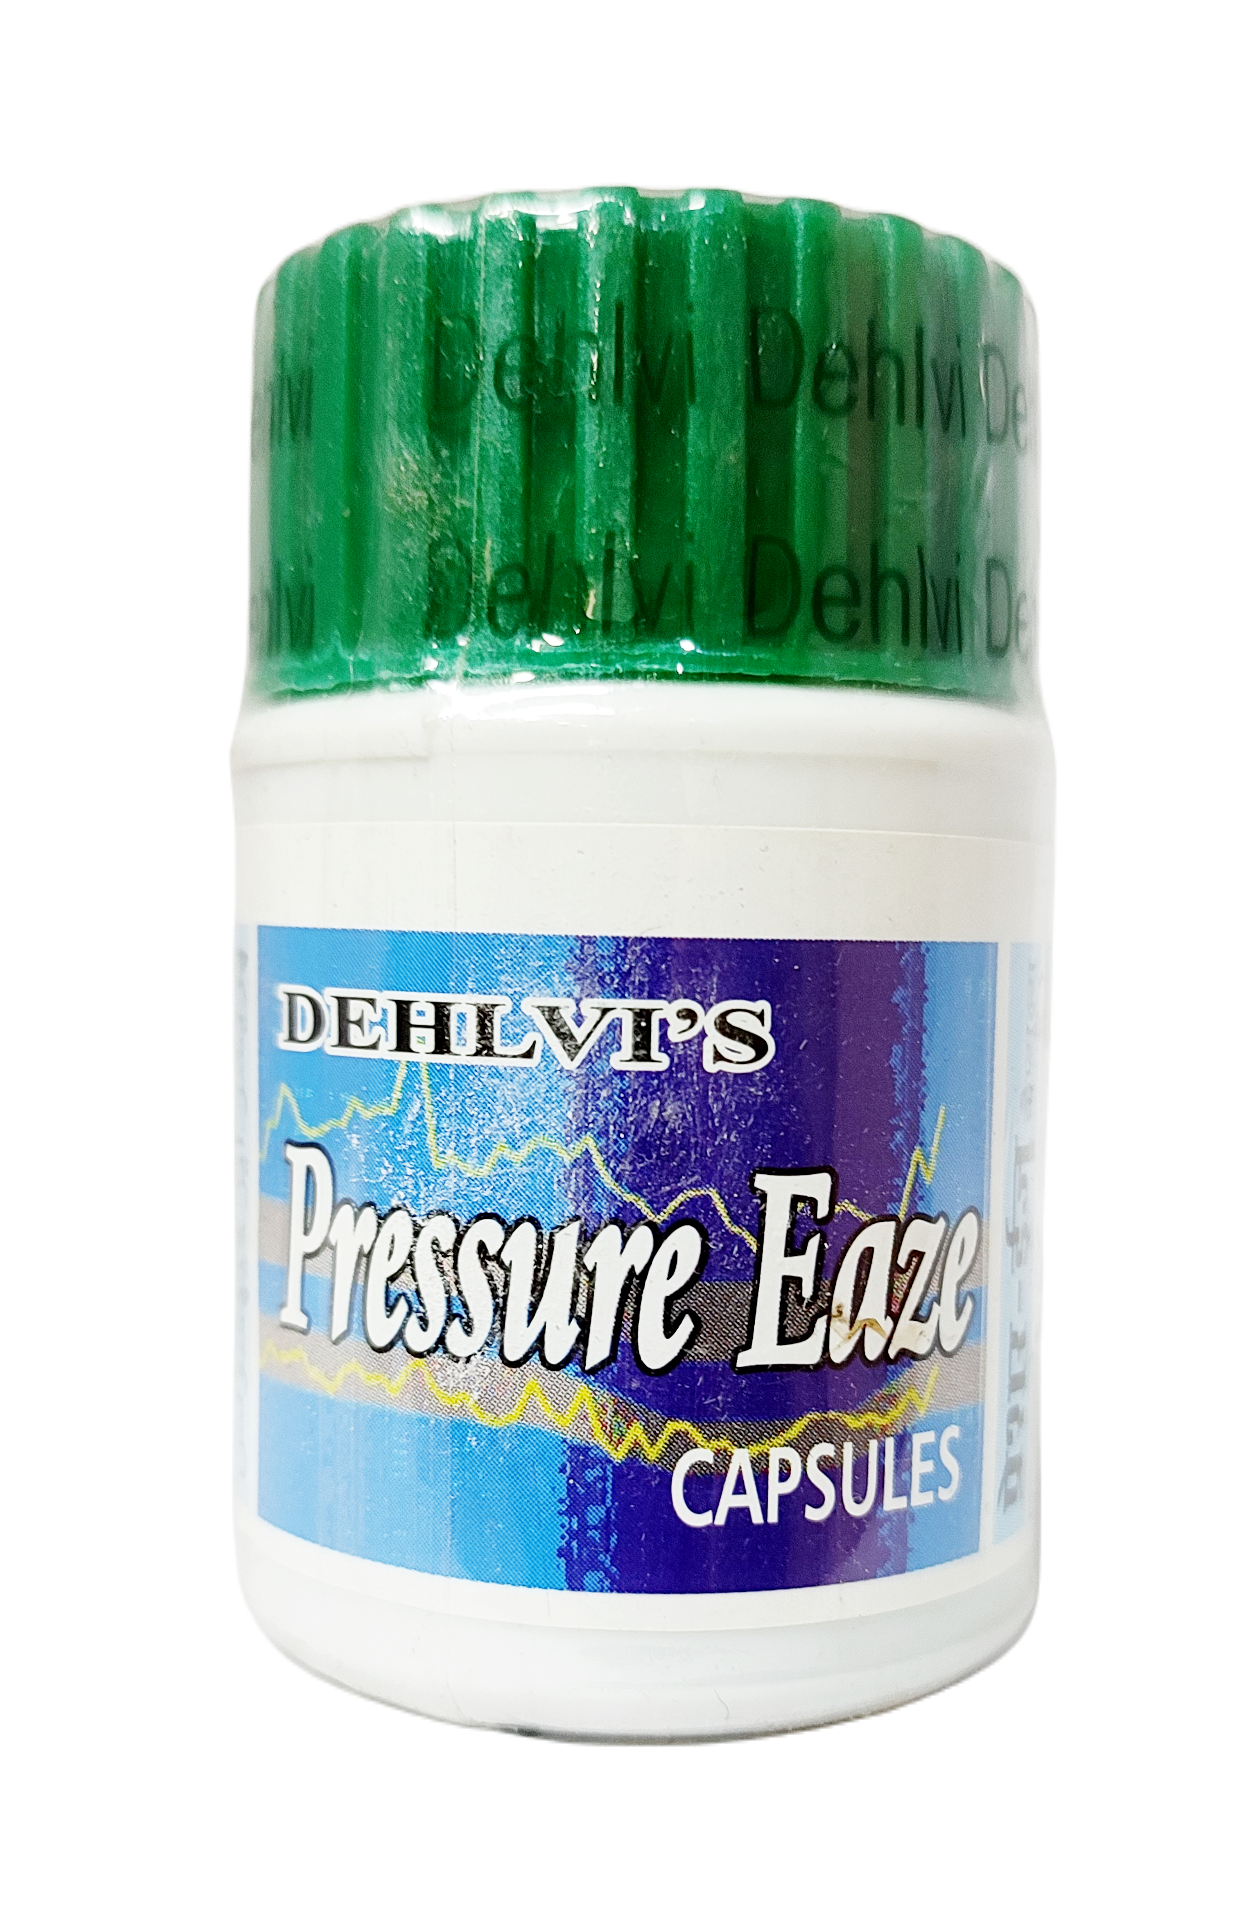 Pressure Eaze Capsules Dehlvi (28caps)